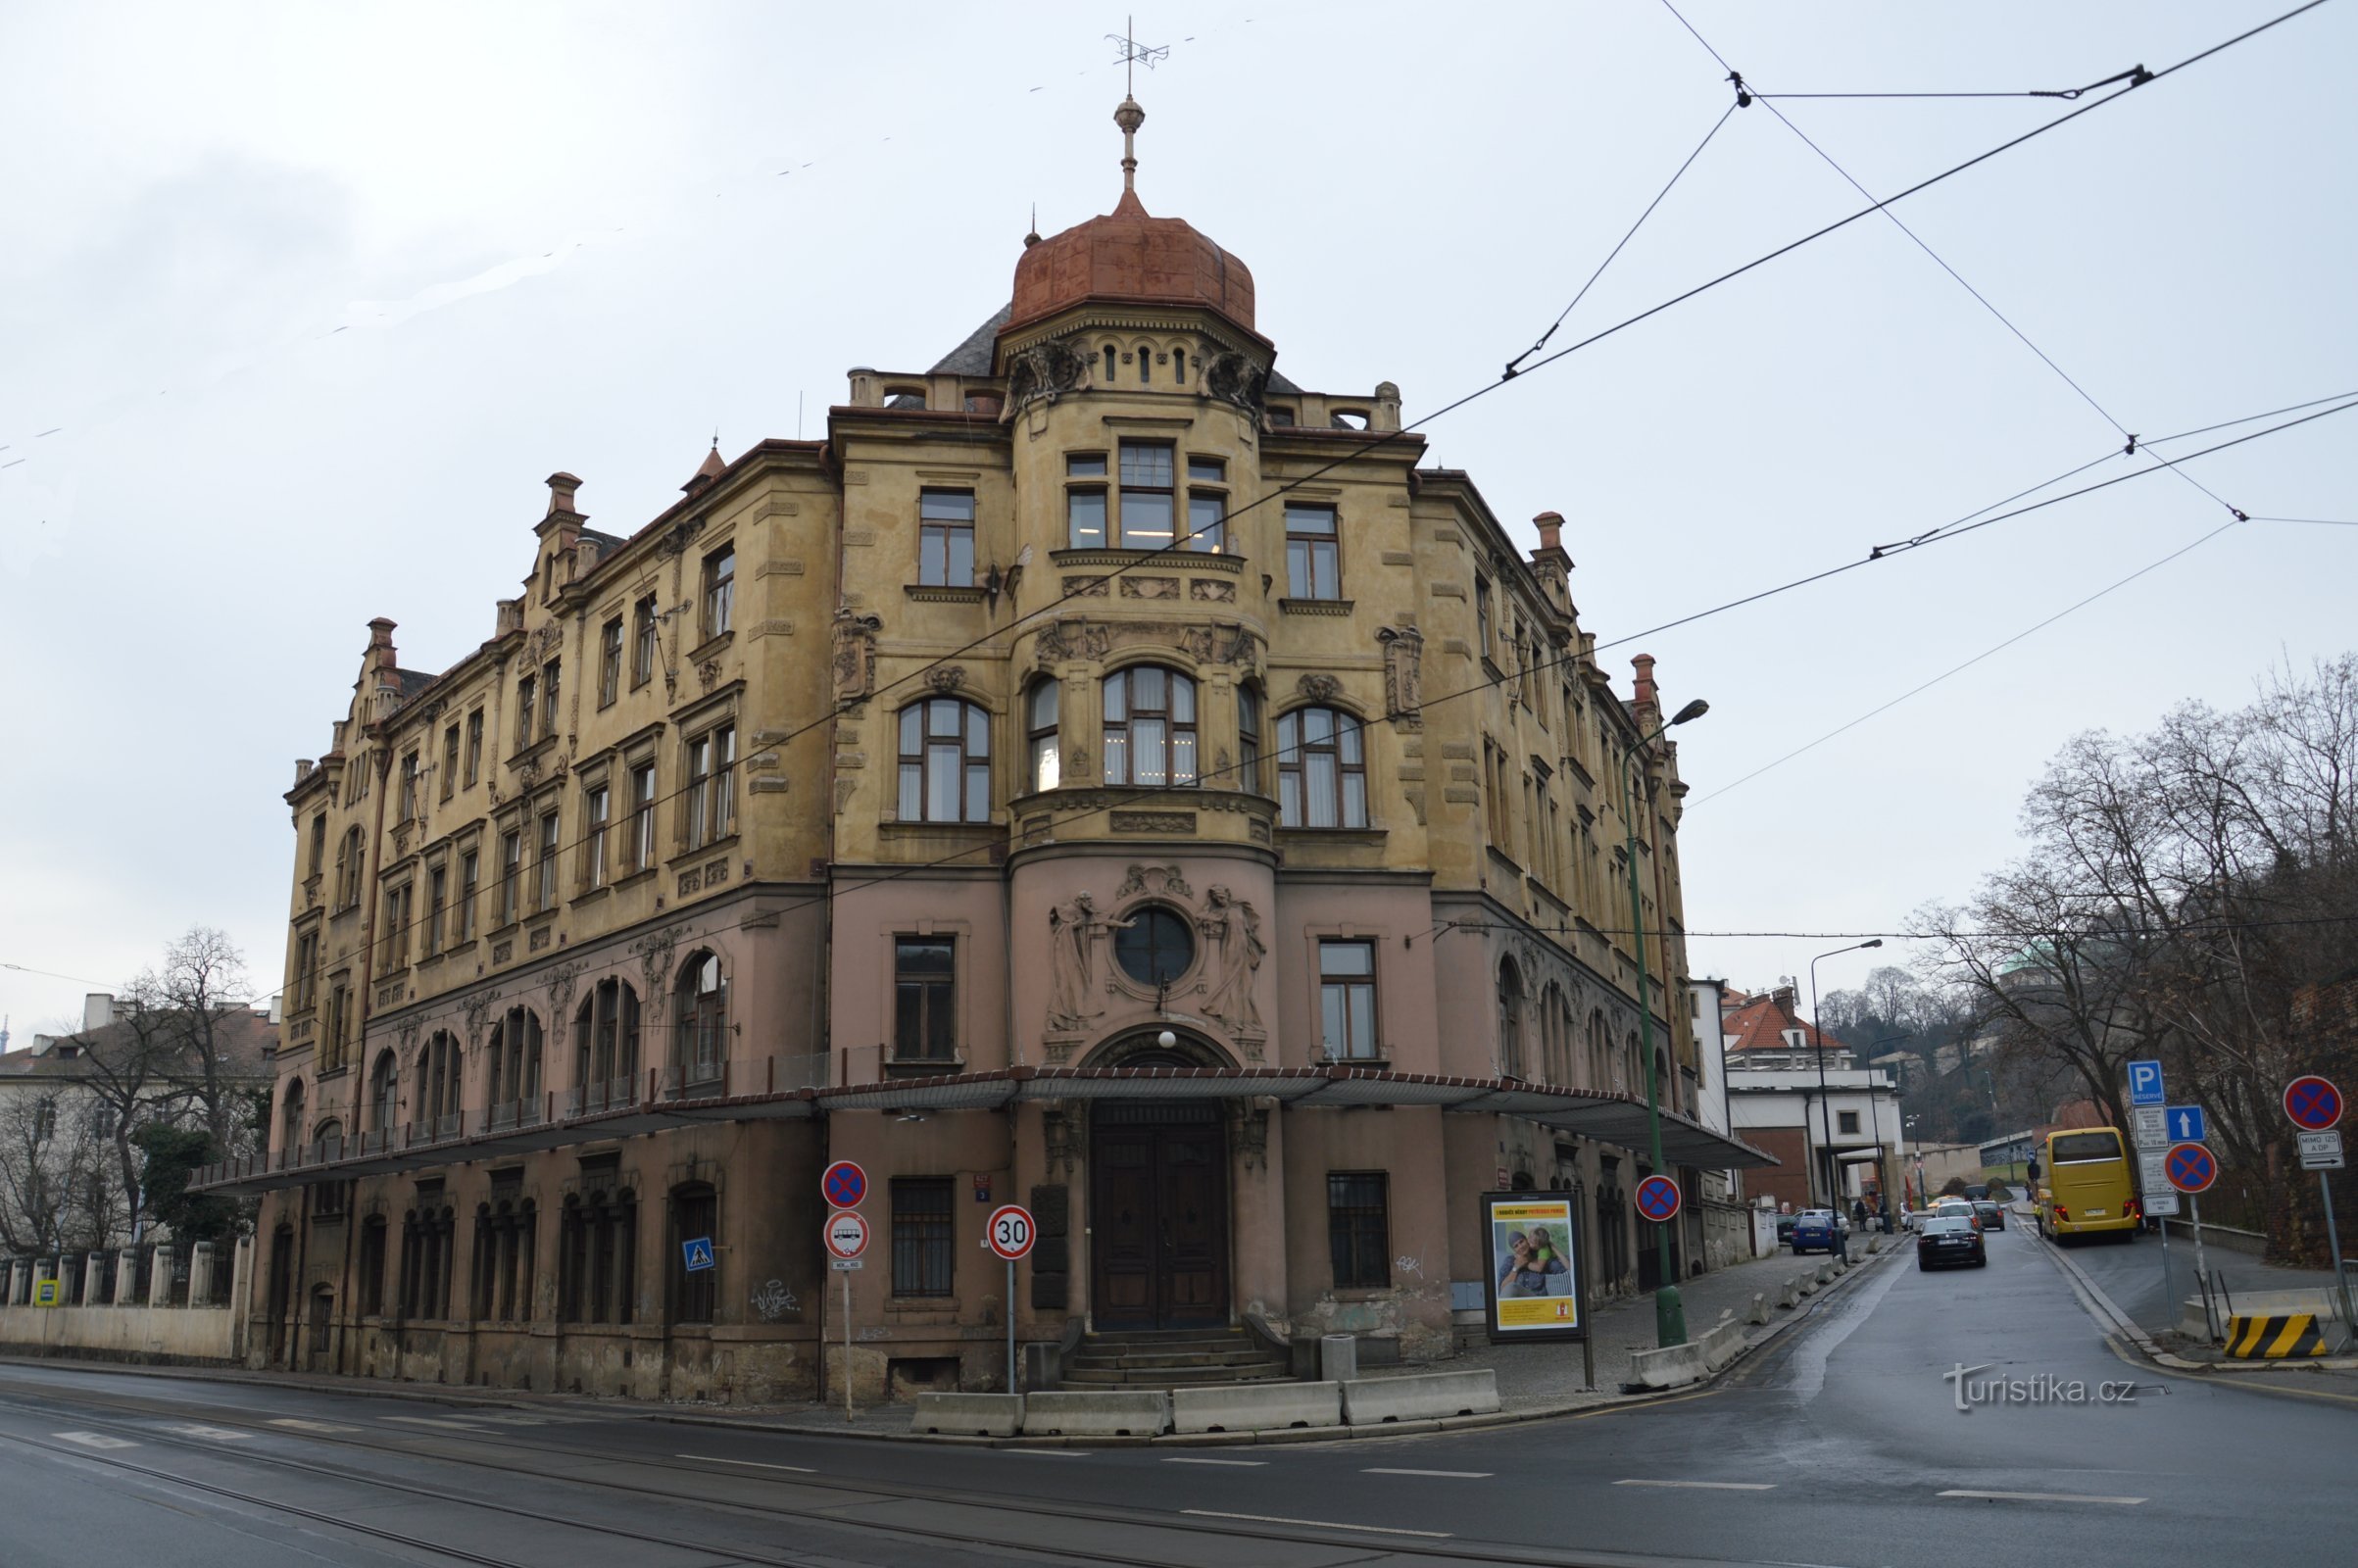 Stavba nekdanjega Zimskega zdravilišča, danes sedež mestnega sveta